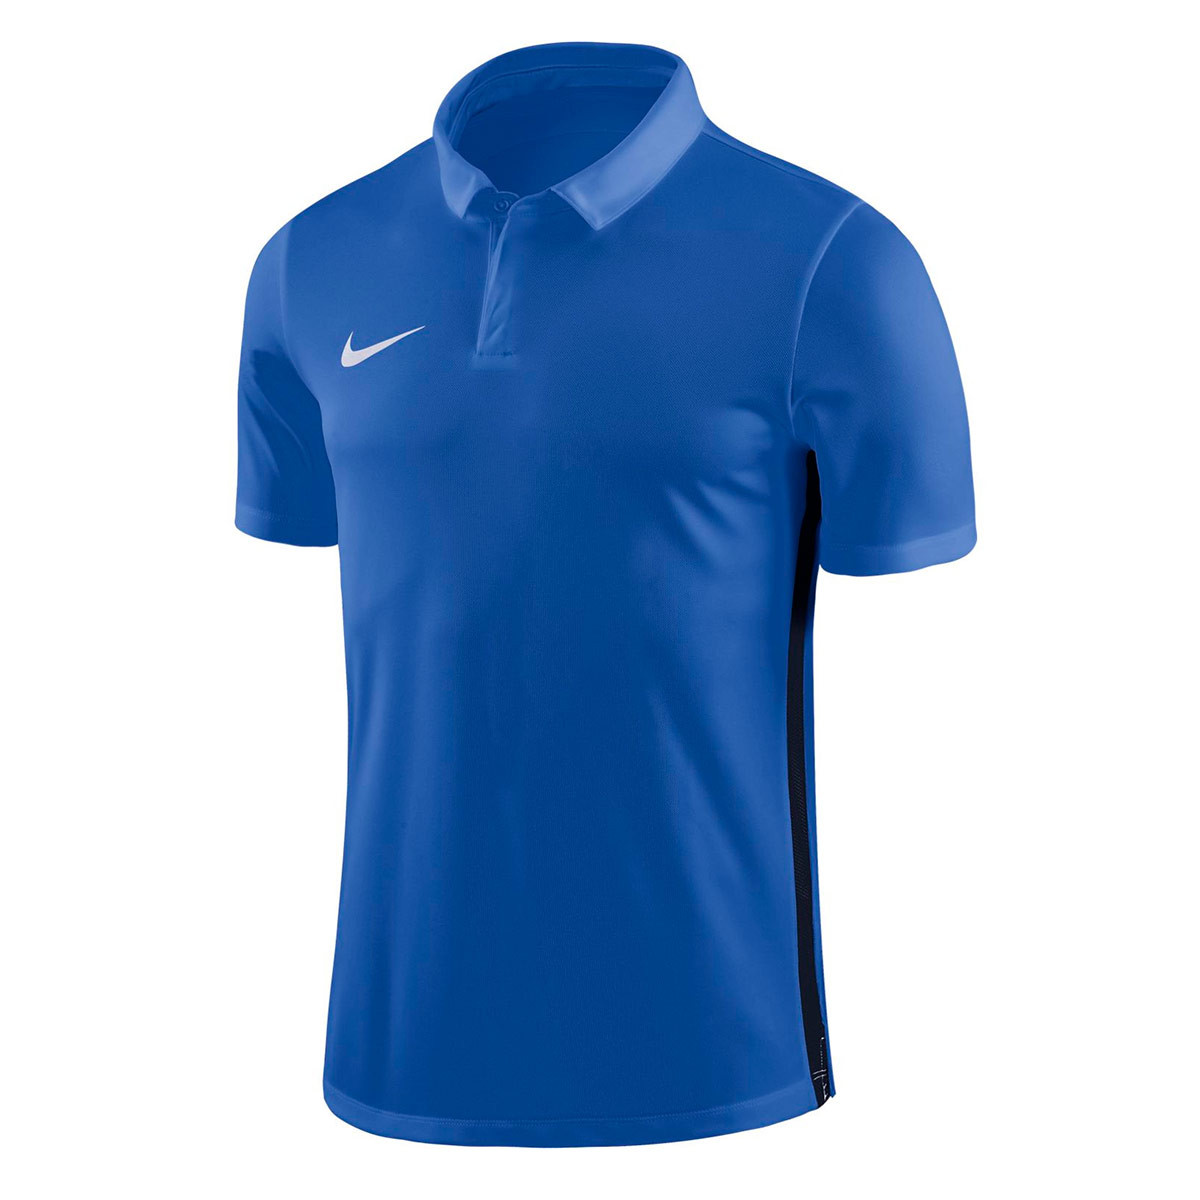 Polo shirt Nike Academy 18 m/c Royal 